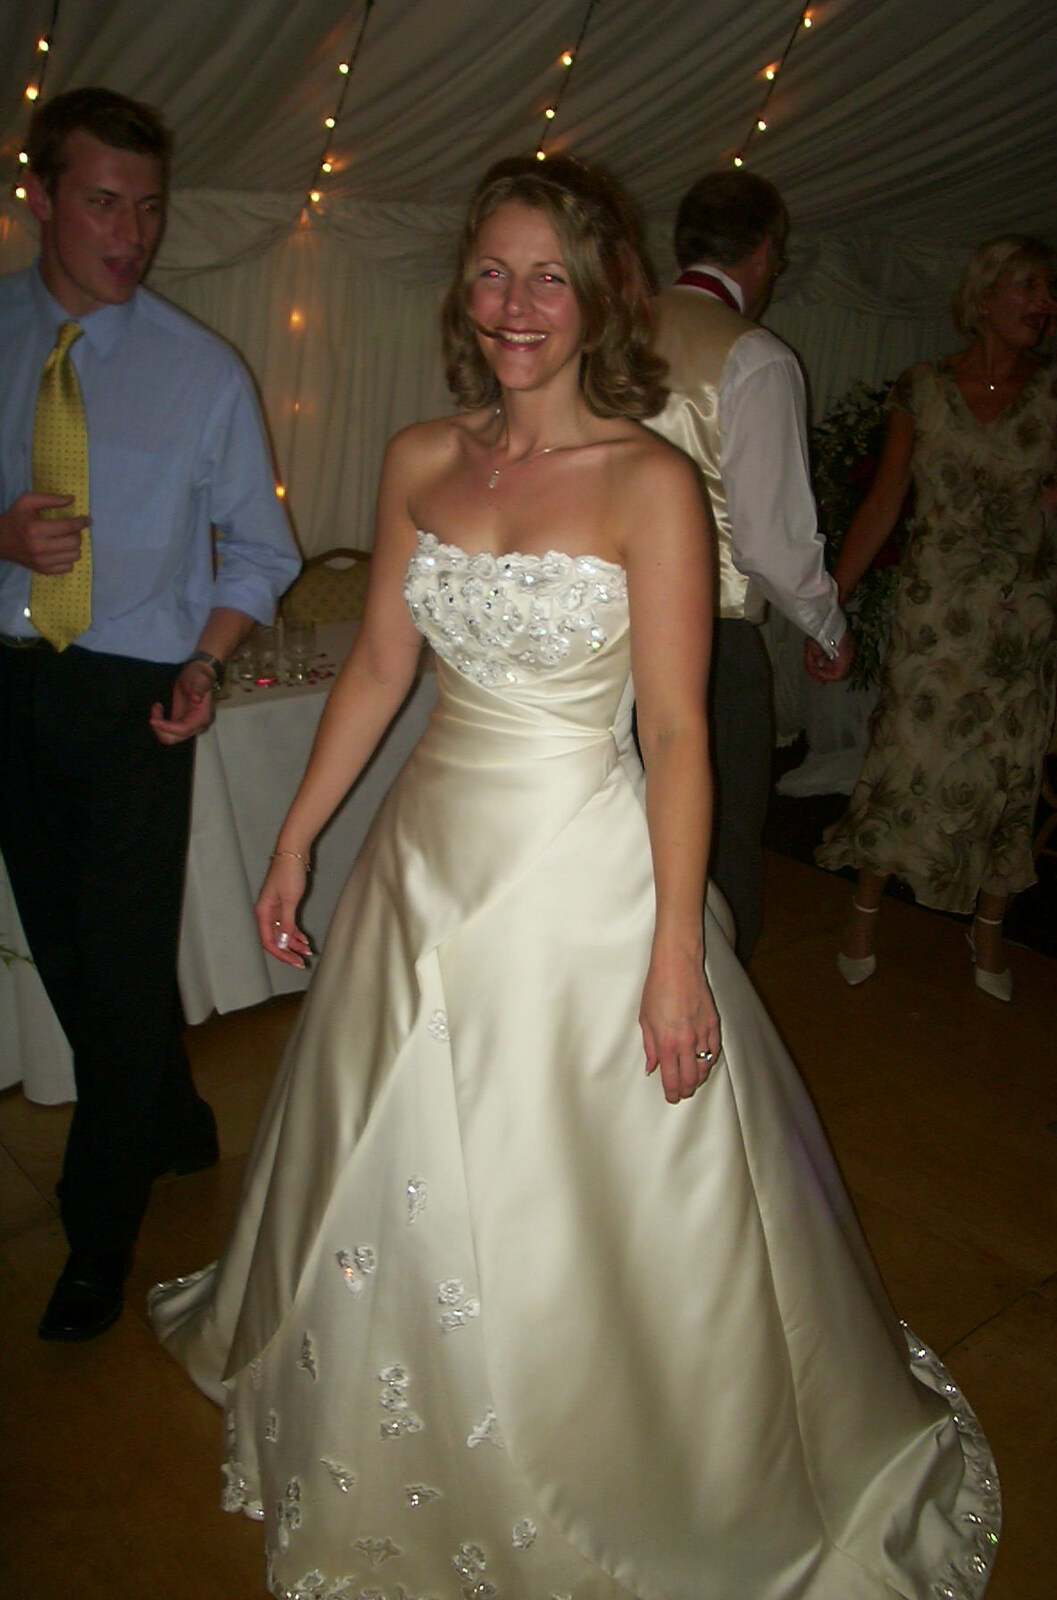 Genaya in the dress from Genaya's Wedding Reception, near Badwell Ash, Suffolk - 20th May 2001